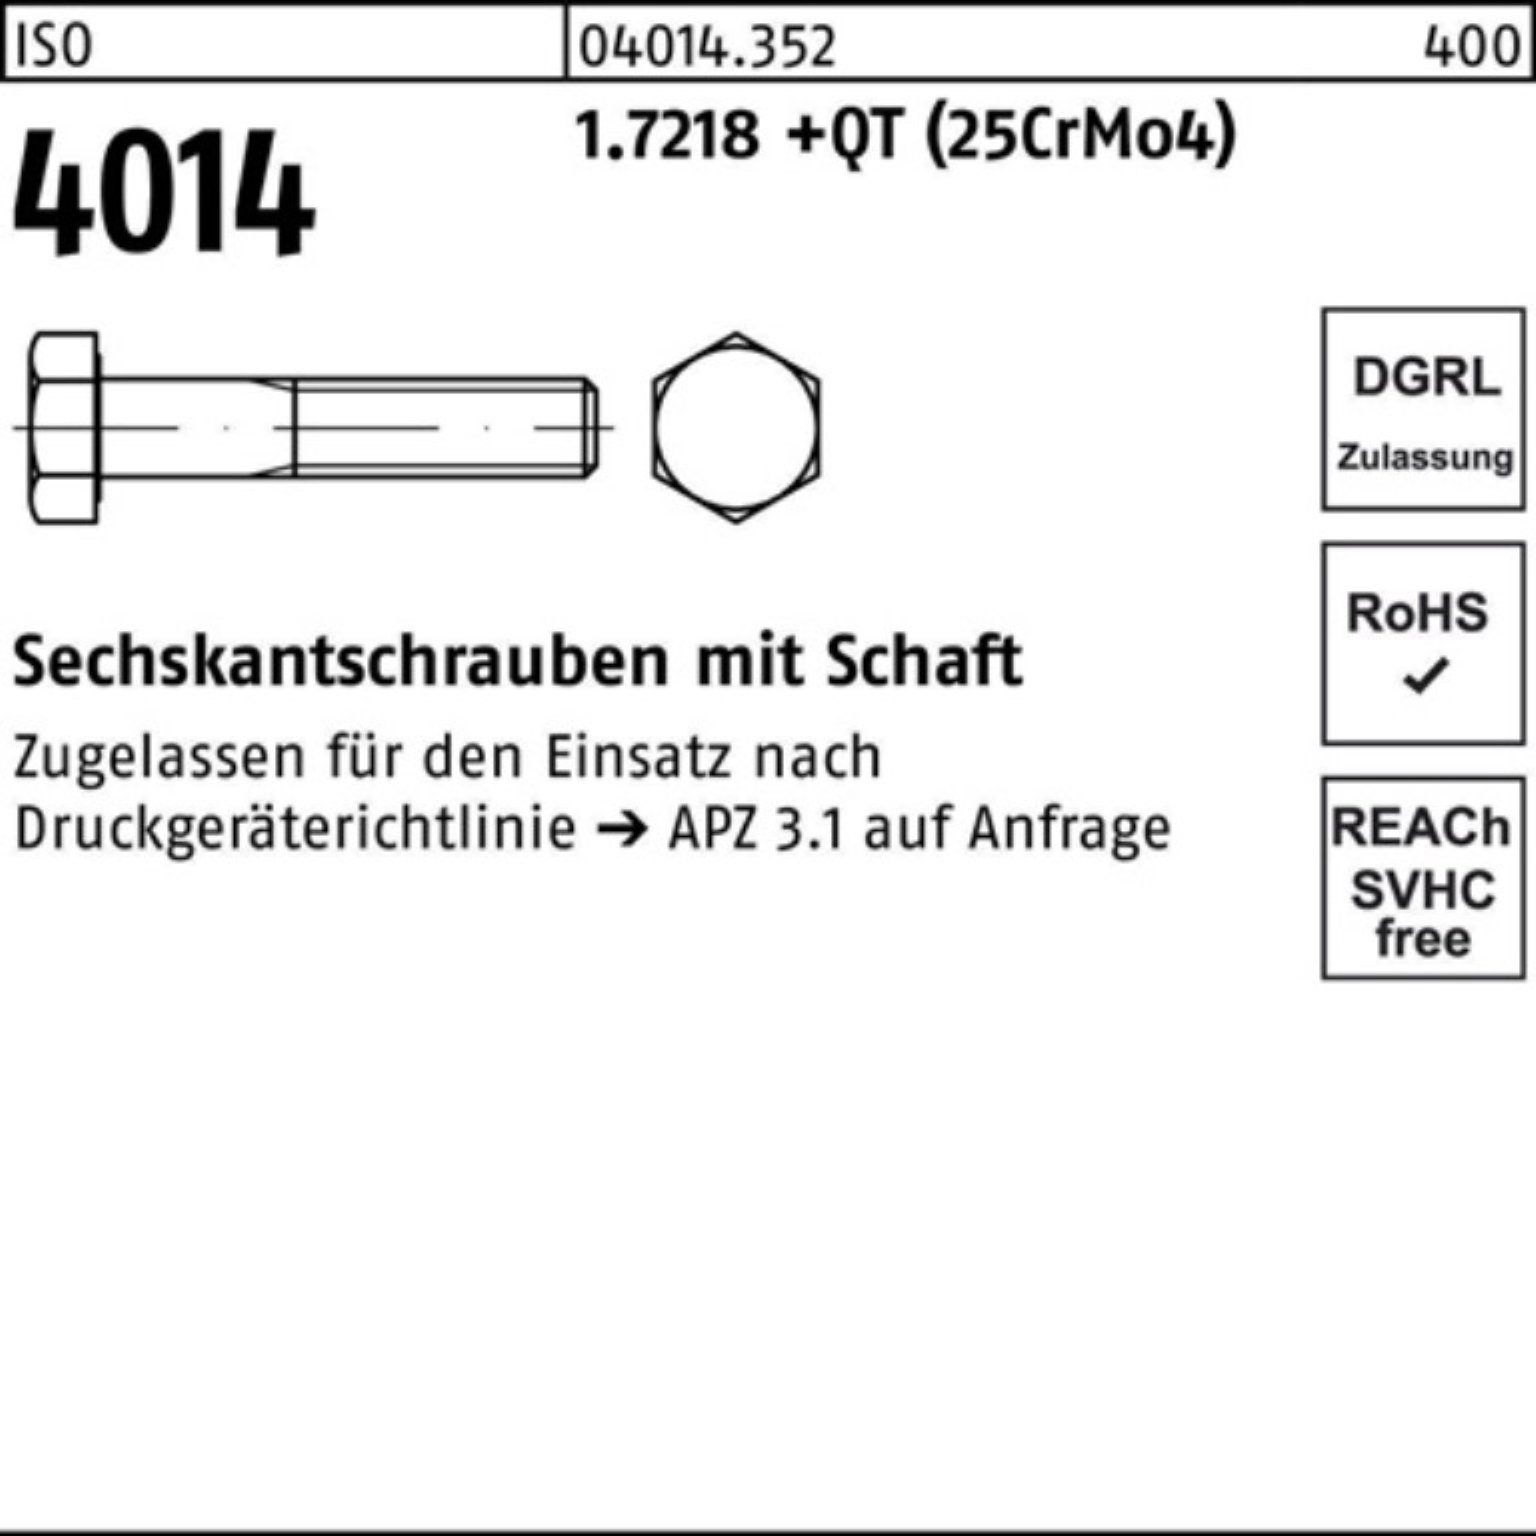 4014 Sechskantschraube 100er (25Cr ISO Pack Bufab M24x 1.7218 +QT Sechskantschraube 160 Schaft